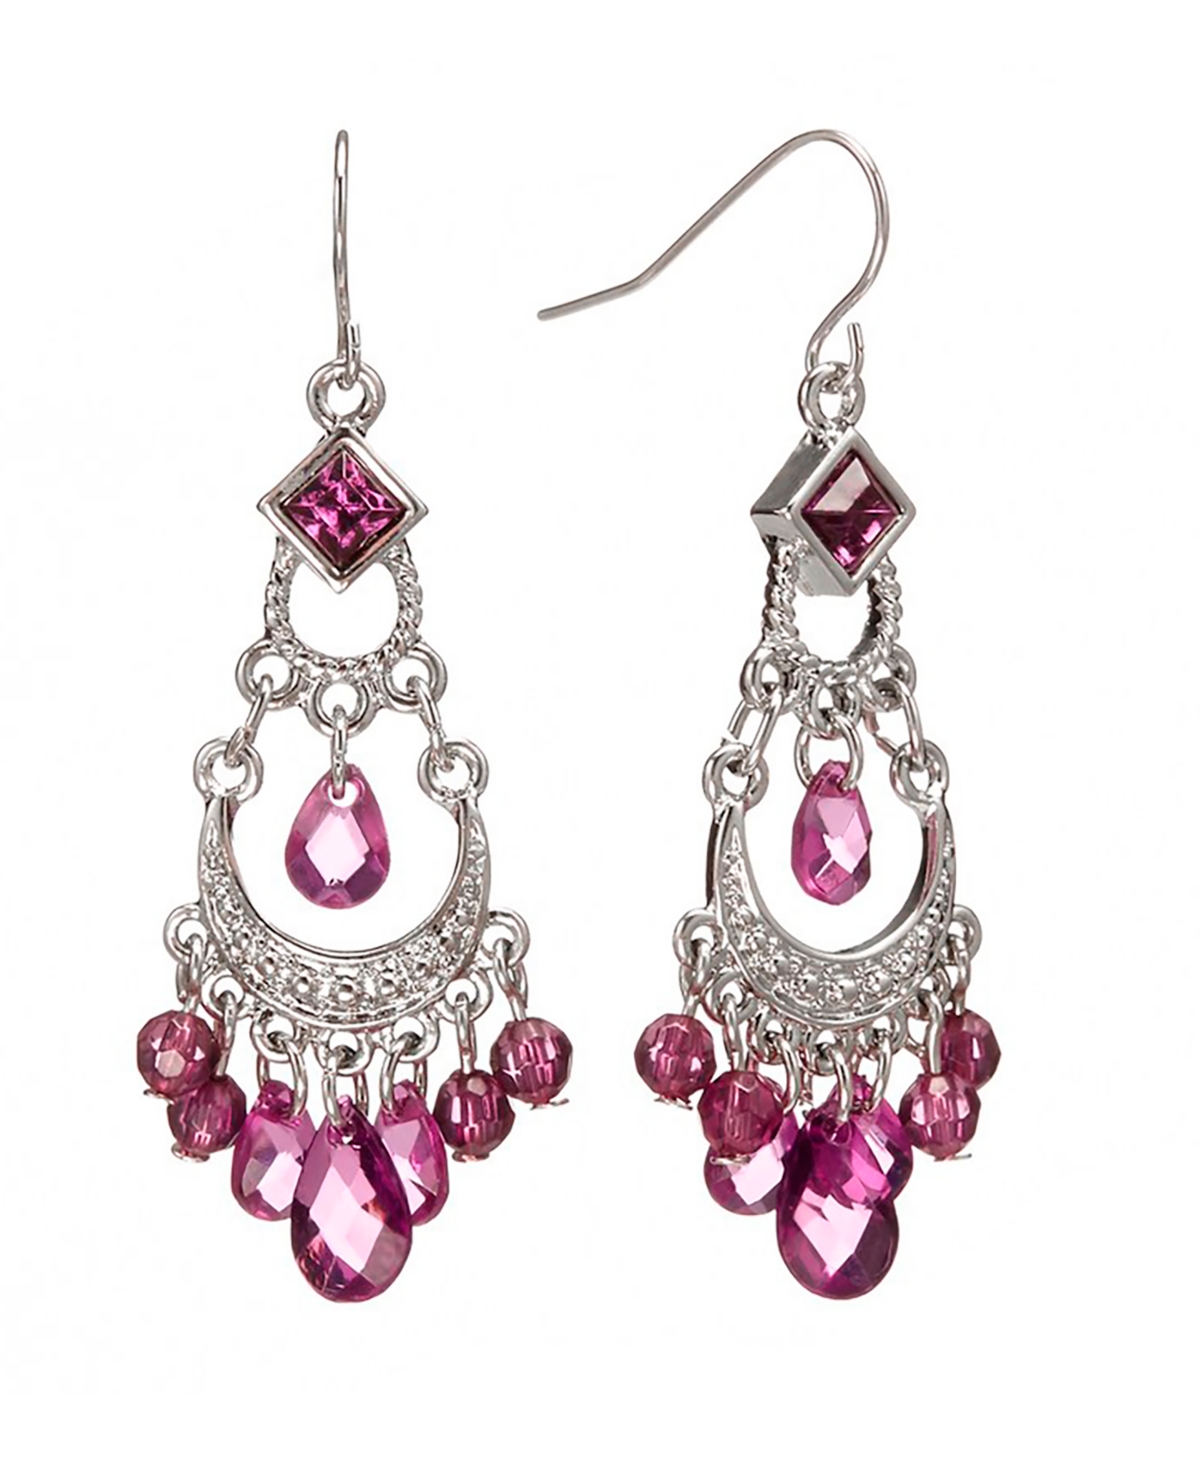 2028 Silver-tone Amethyst Purple Crystal Chandelier Earrings